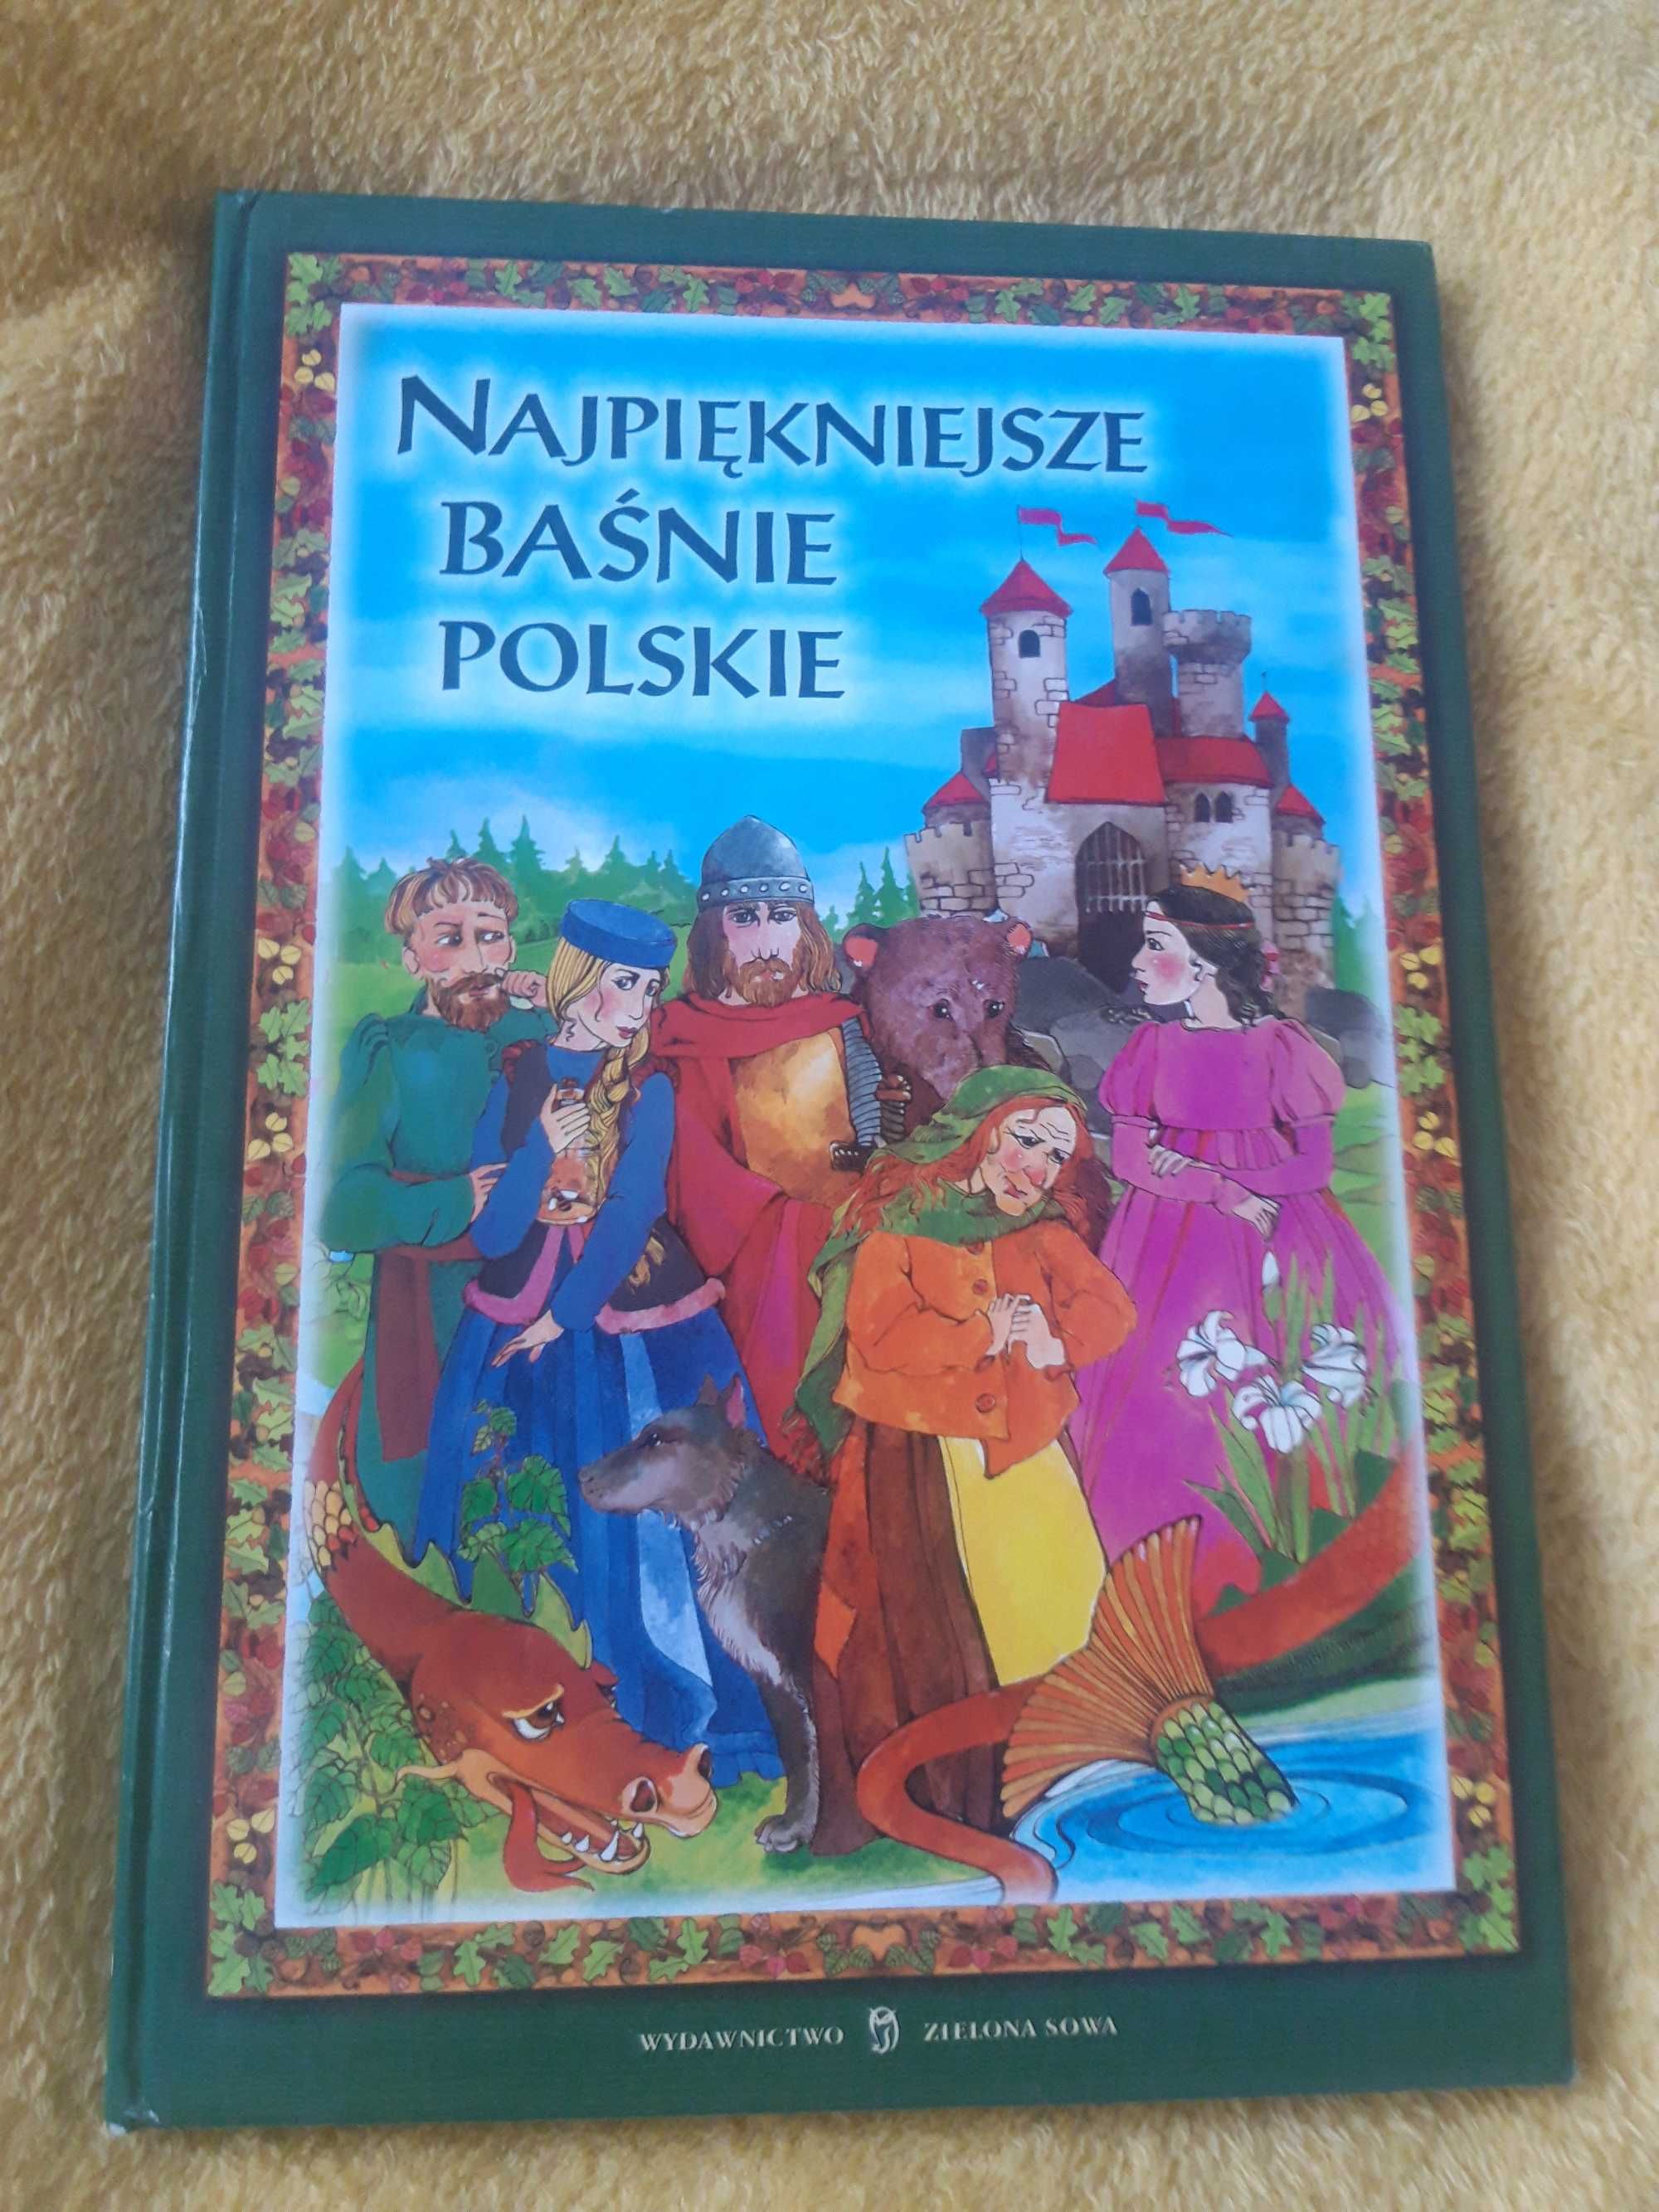 Basnie polskie ksiazka w twardej oprawie